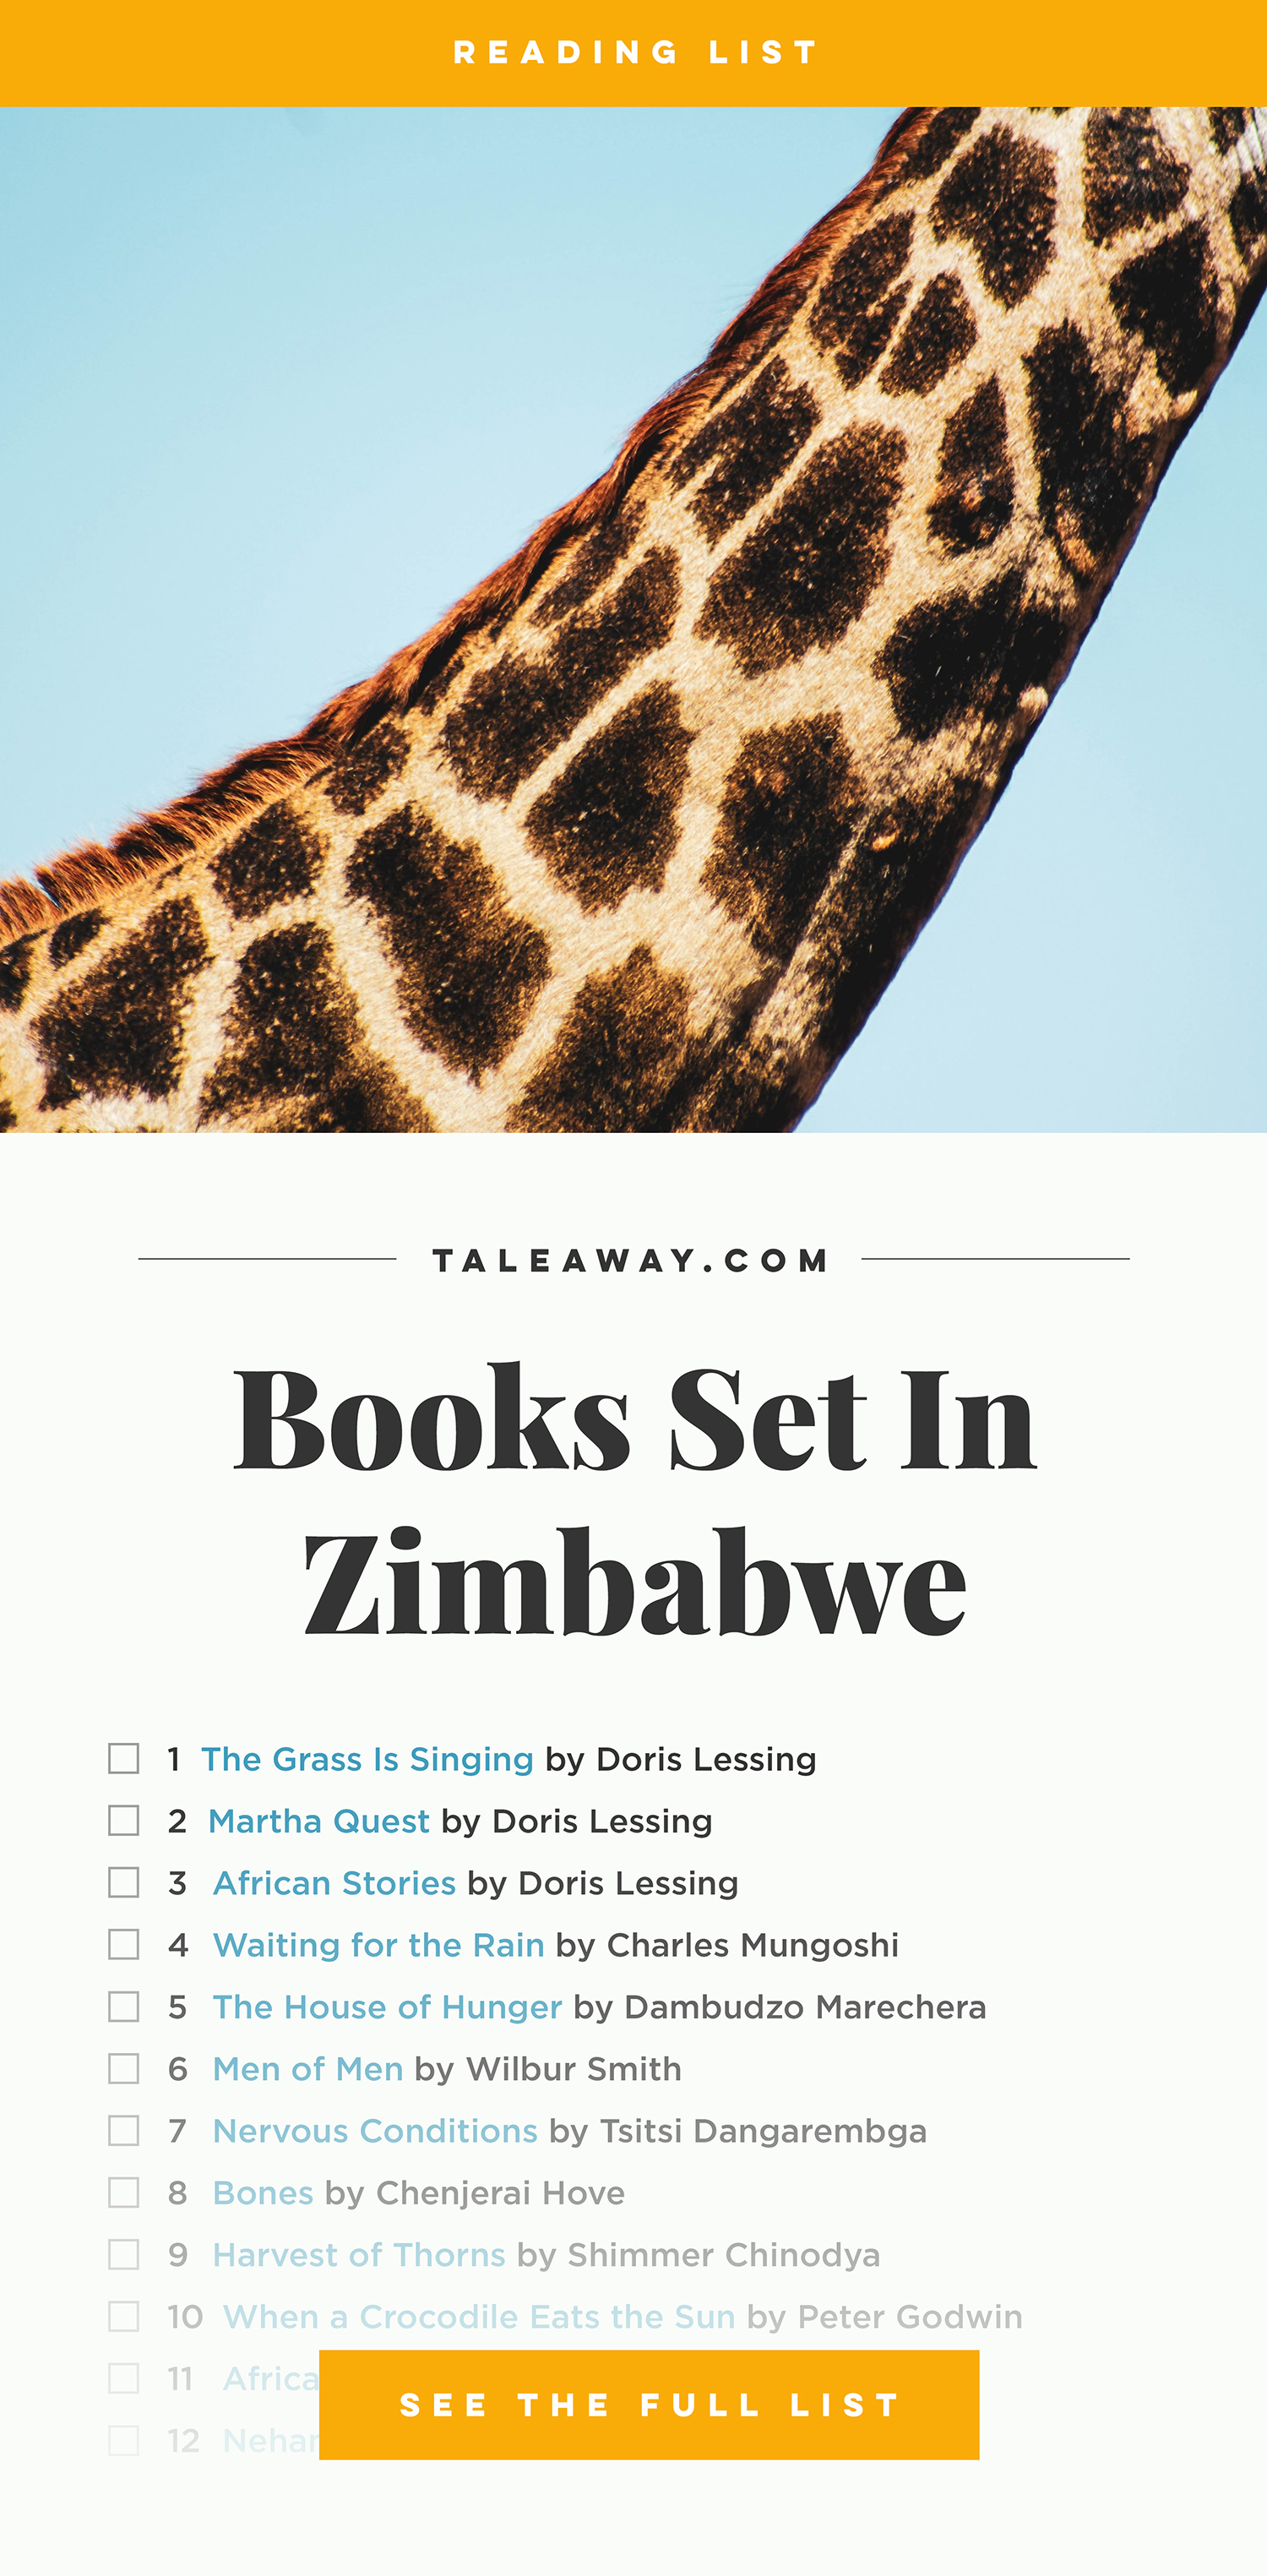 Books Set in Zimbabwe. zimbabwe books, zimbabwe novels, zimbabwe literature, zimbabwe fiction, zimbabwe authors, zimbabwe memoirs, best books set in zimbabwe, popular books set in zimbabwe, books about zimbabwe, zimbabwe reading challenge, zimbabwe reading list, harare books, bulawayo books, zimbabwe packing, zimbabwe travel, zimbabwe history, zimbabwe travel books, zimbabwe books to read, books to read before going to zimbabwe, novels set in zimbabwe, books to read about zimbabwe